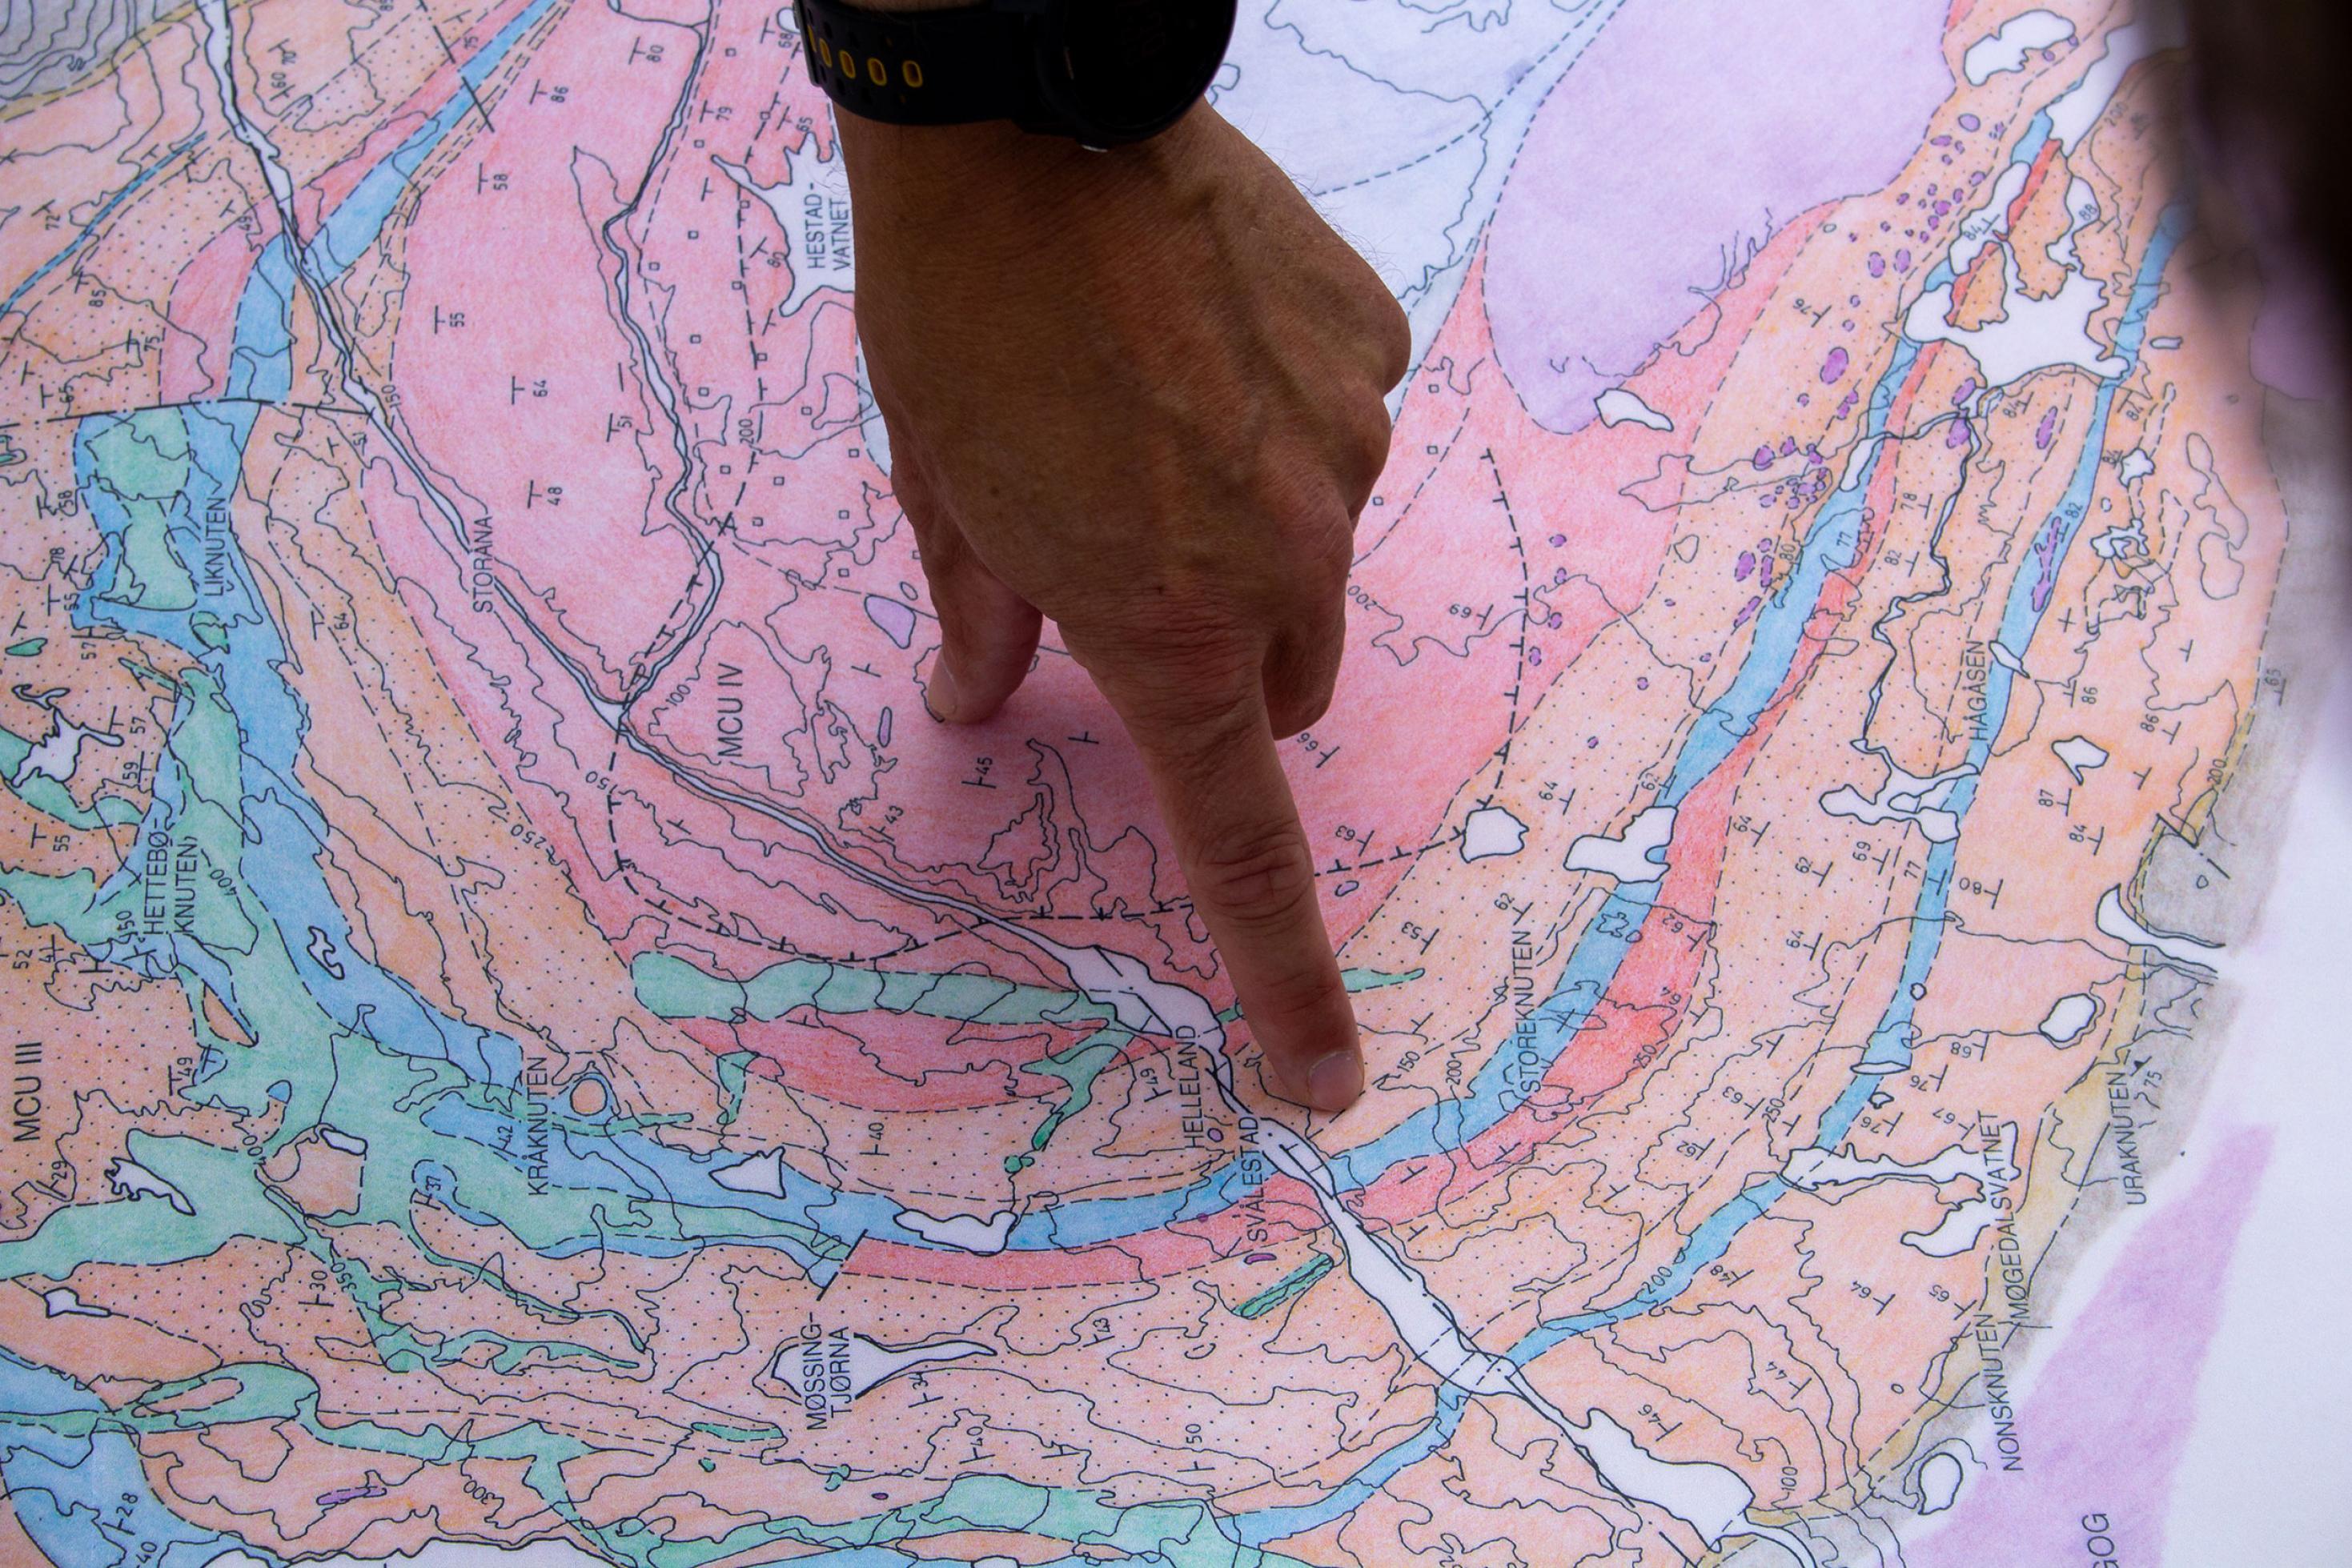 Nahaufnahme einer geologischen Karte, die die hufeisenförmige Anordnung der Schichten zeigt